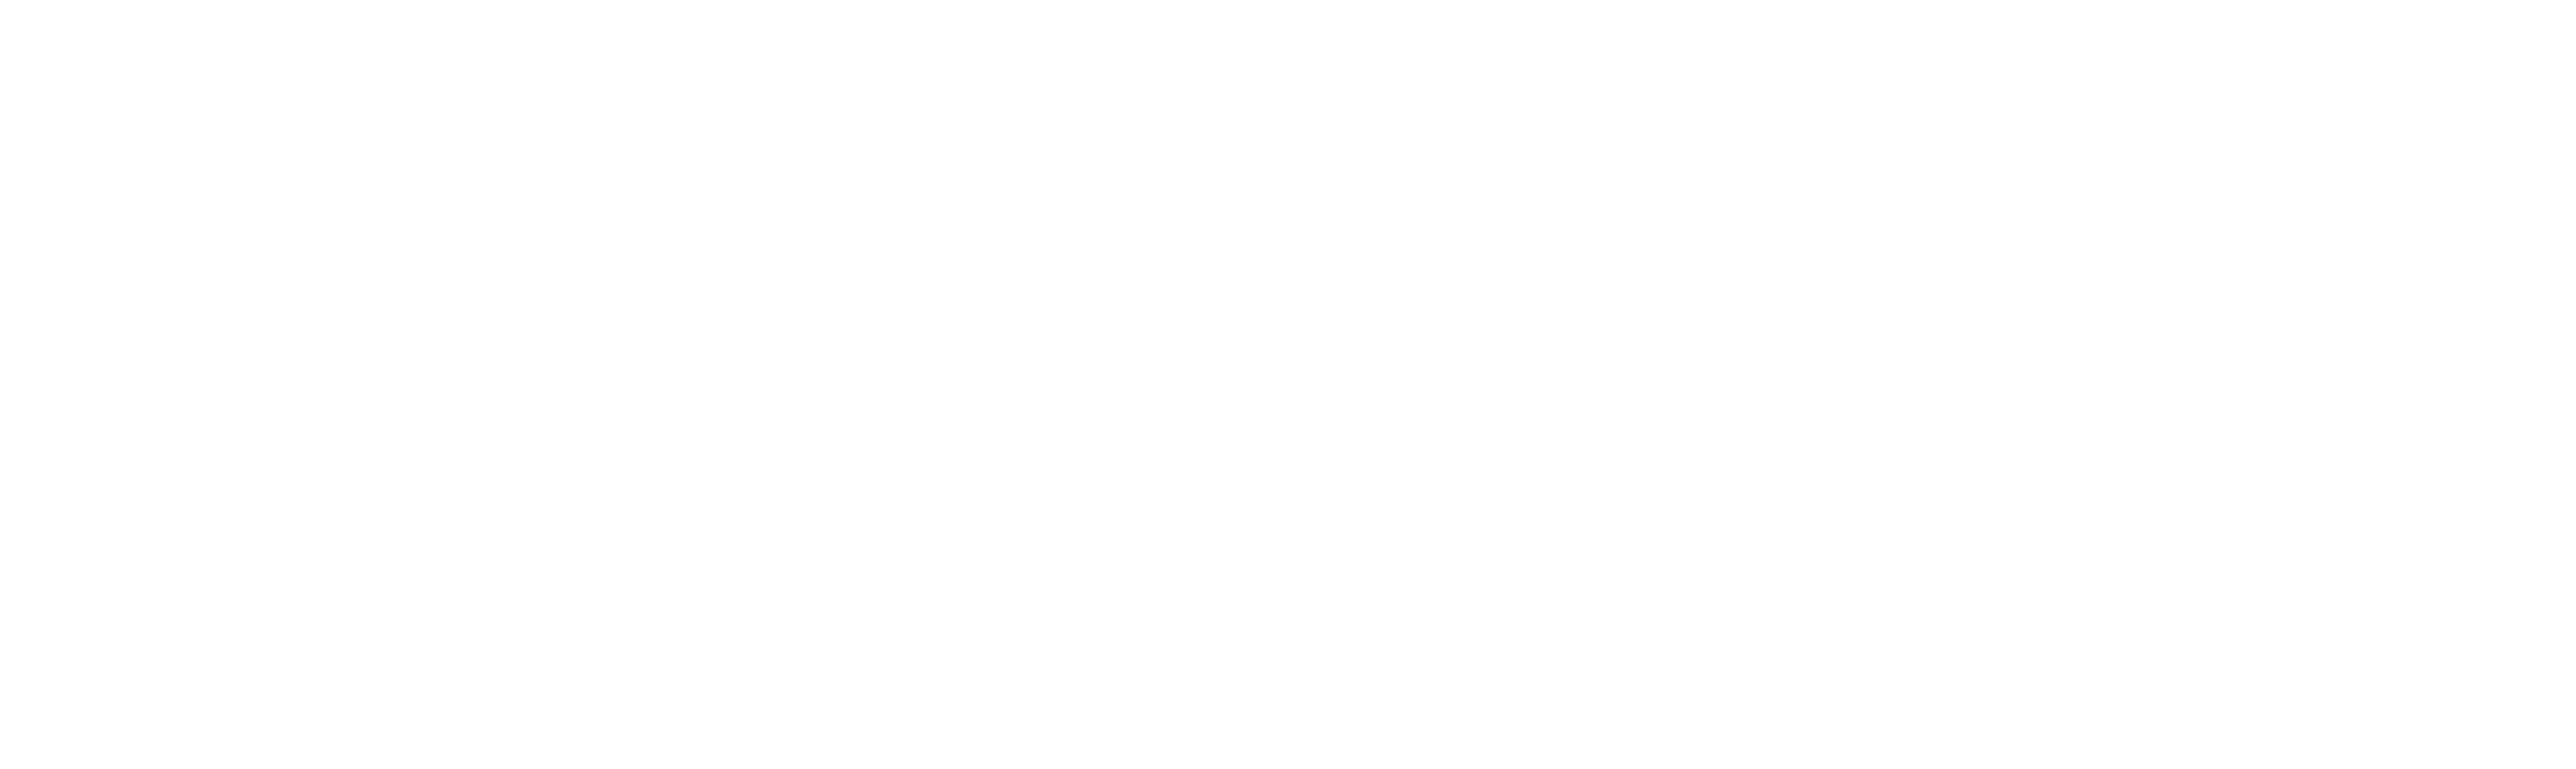 Montana Rifle Co.